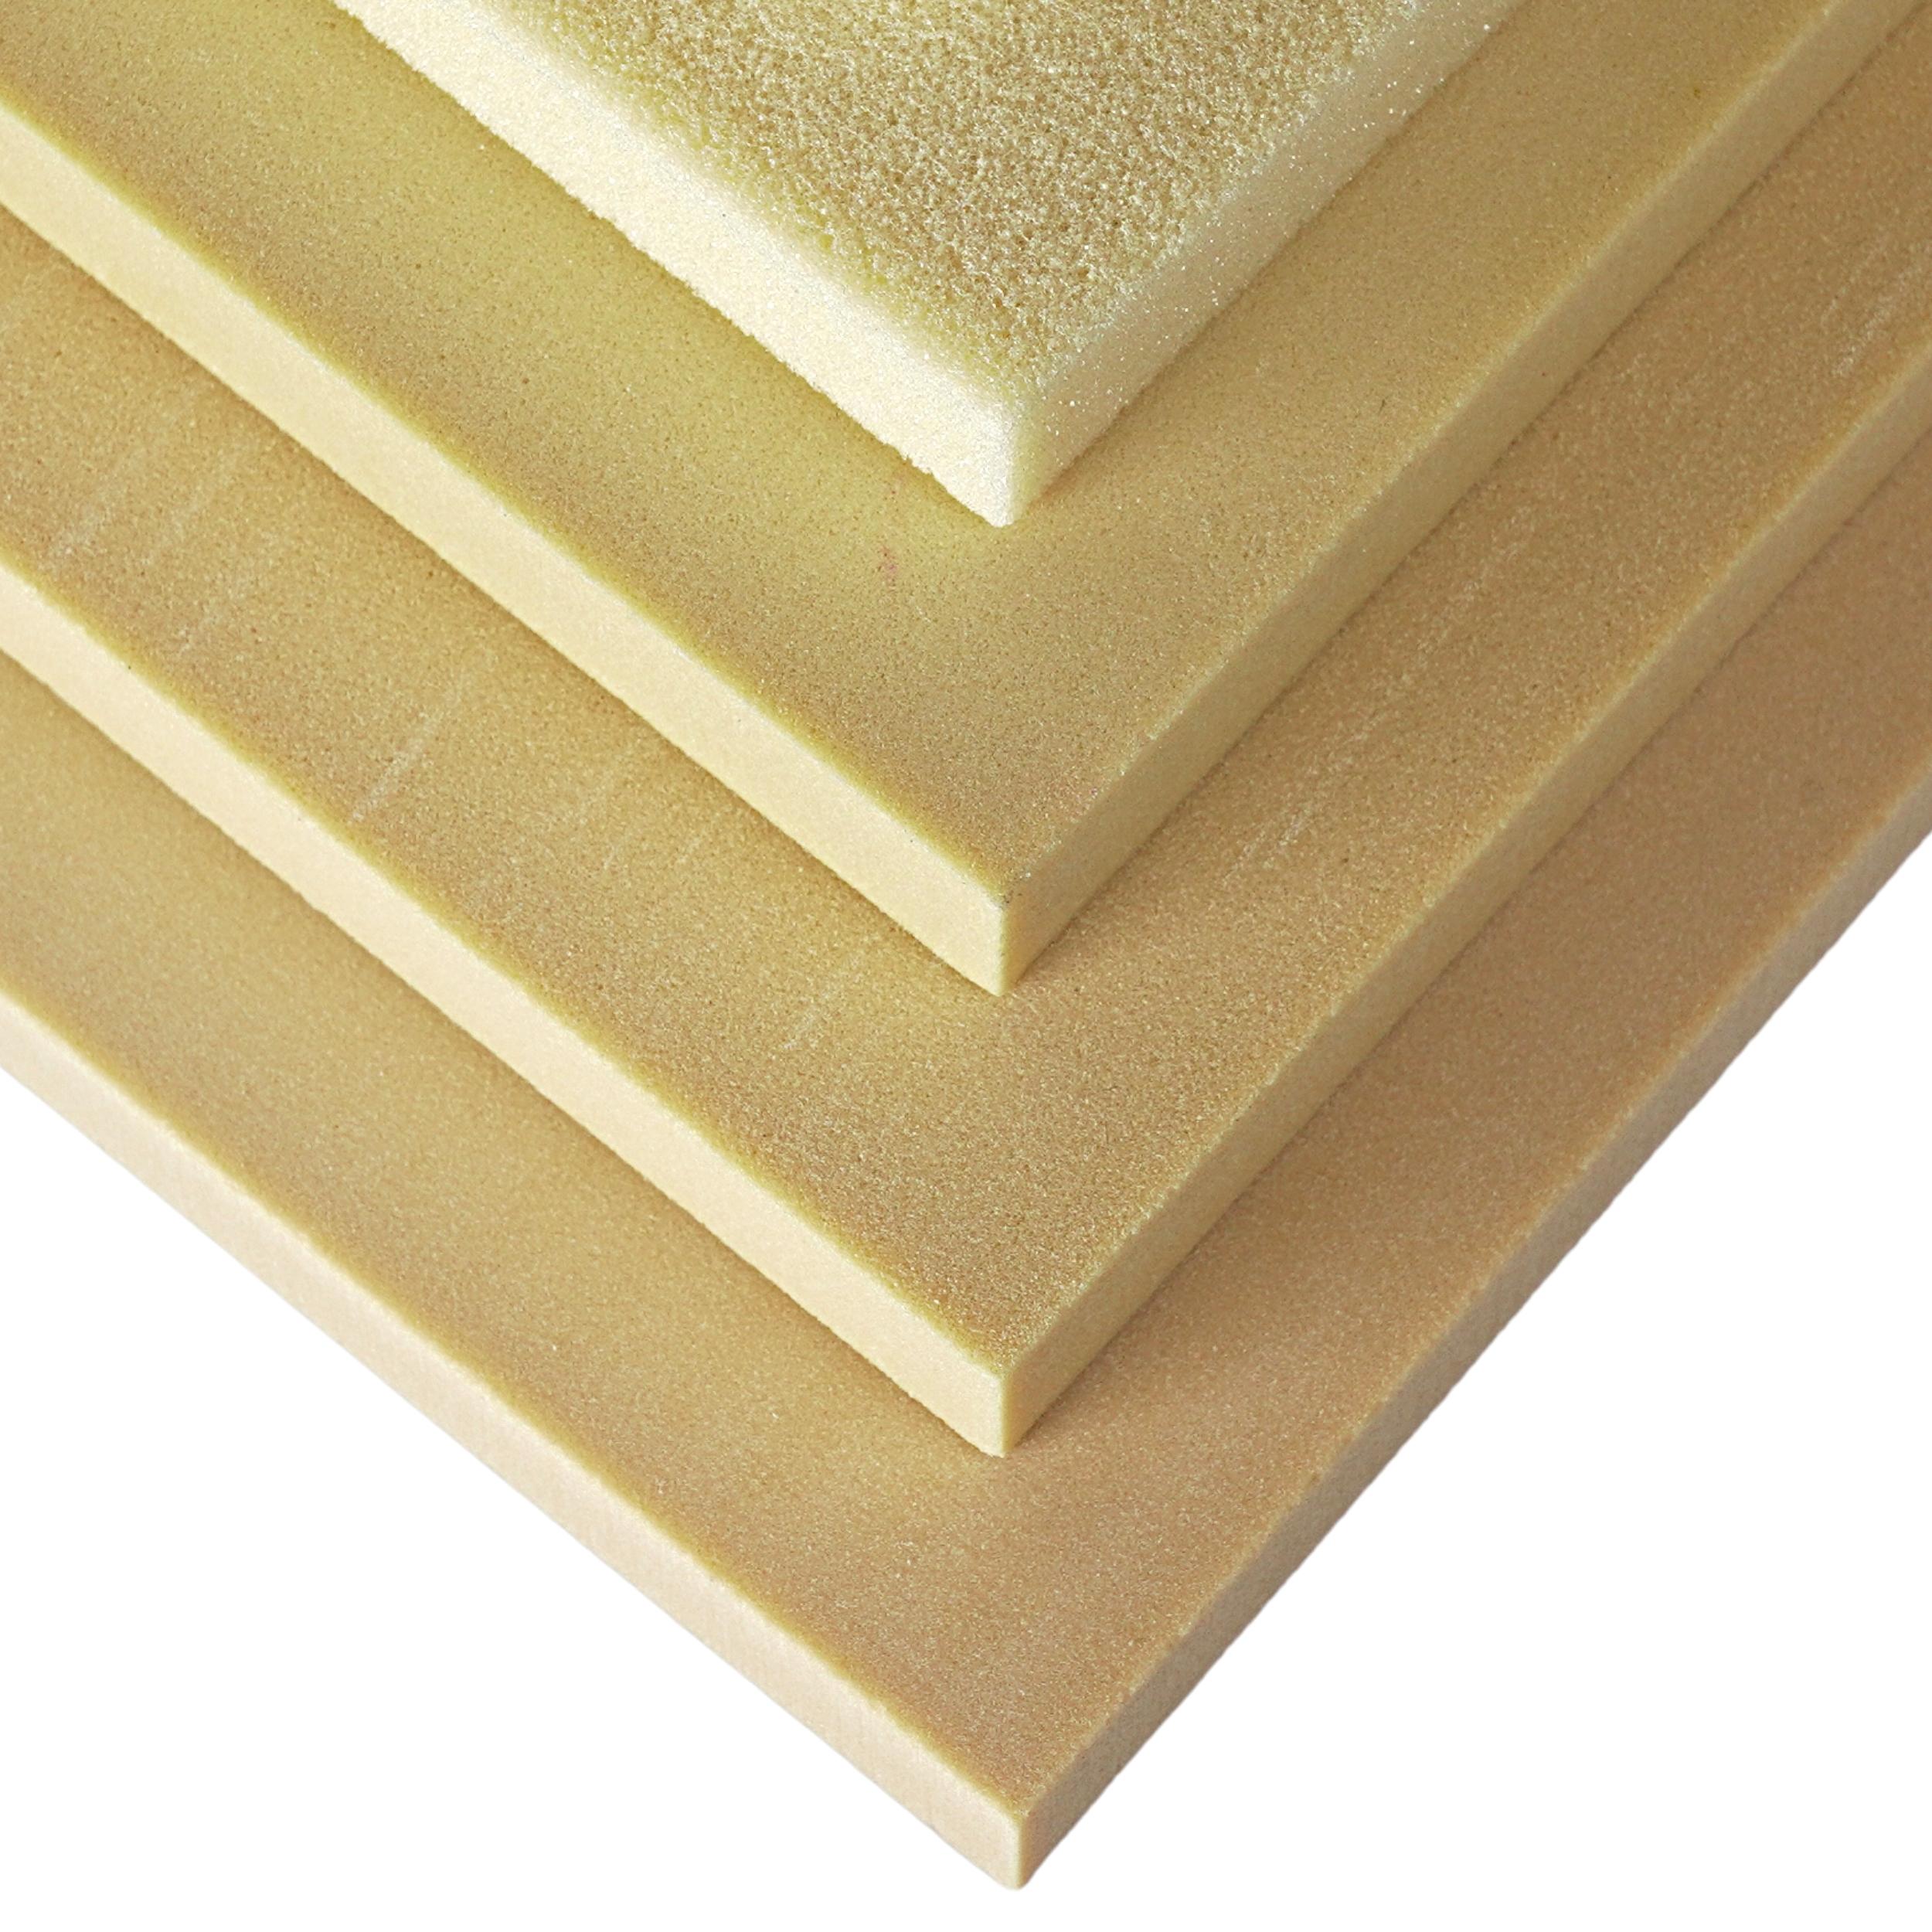 General Plastic FR-3700 polyurethane Foam Board